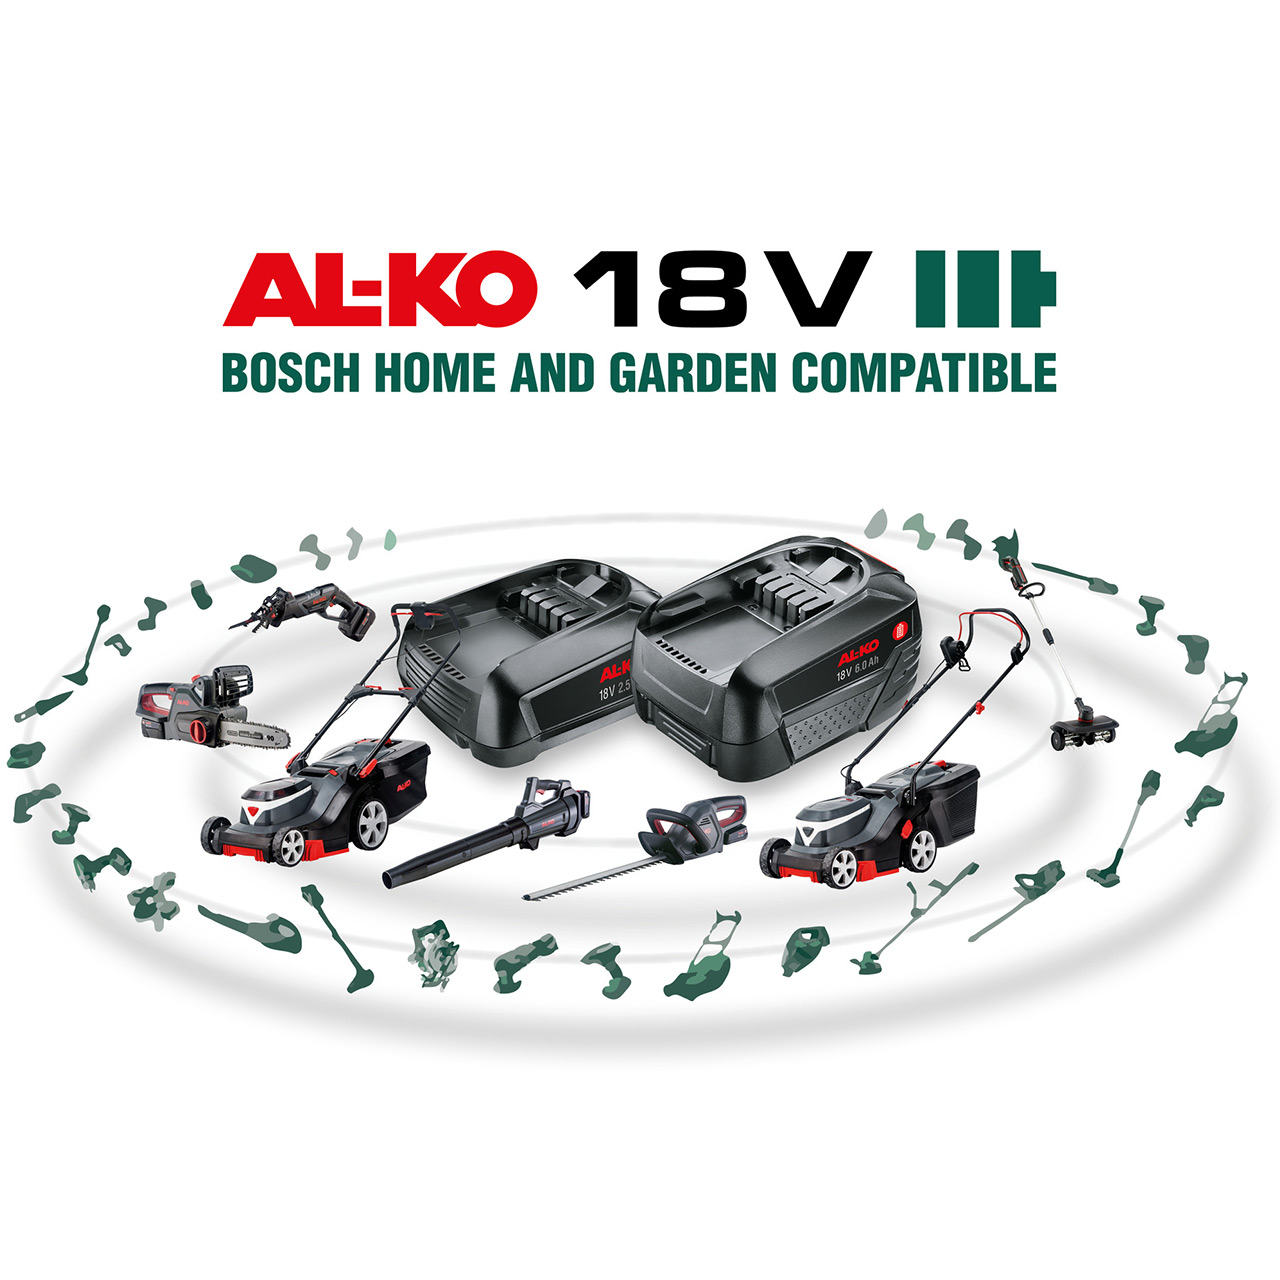 AL-KO_18V_Bosch_Home_And_Garden_Compatible_Range_Webshop.jpg